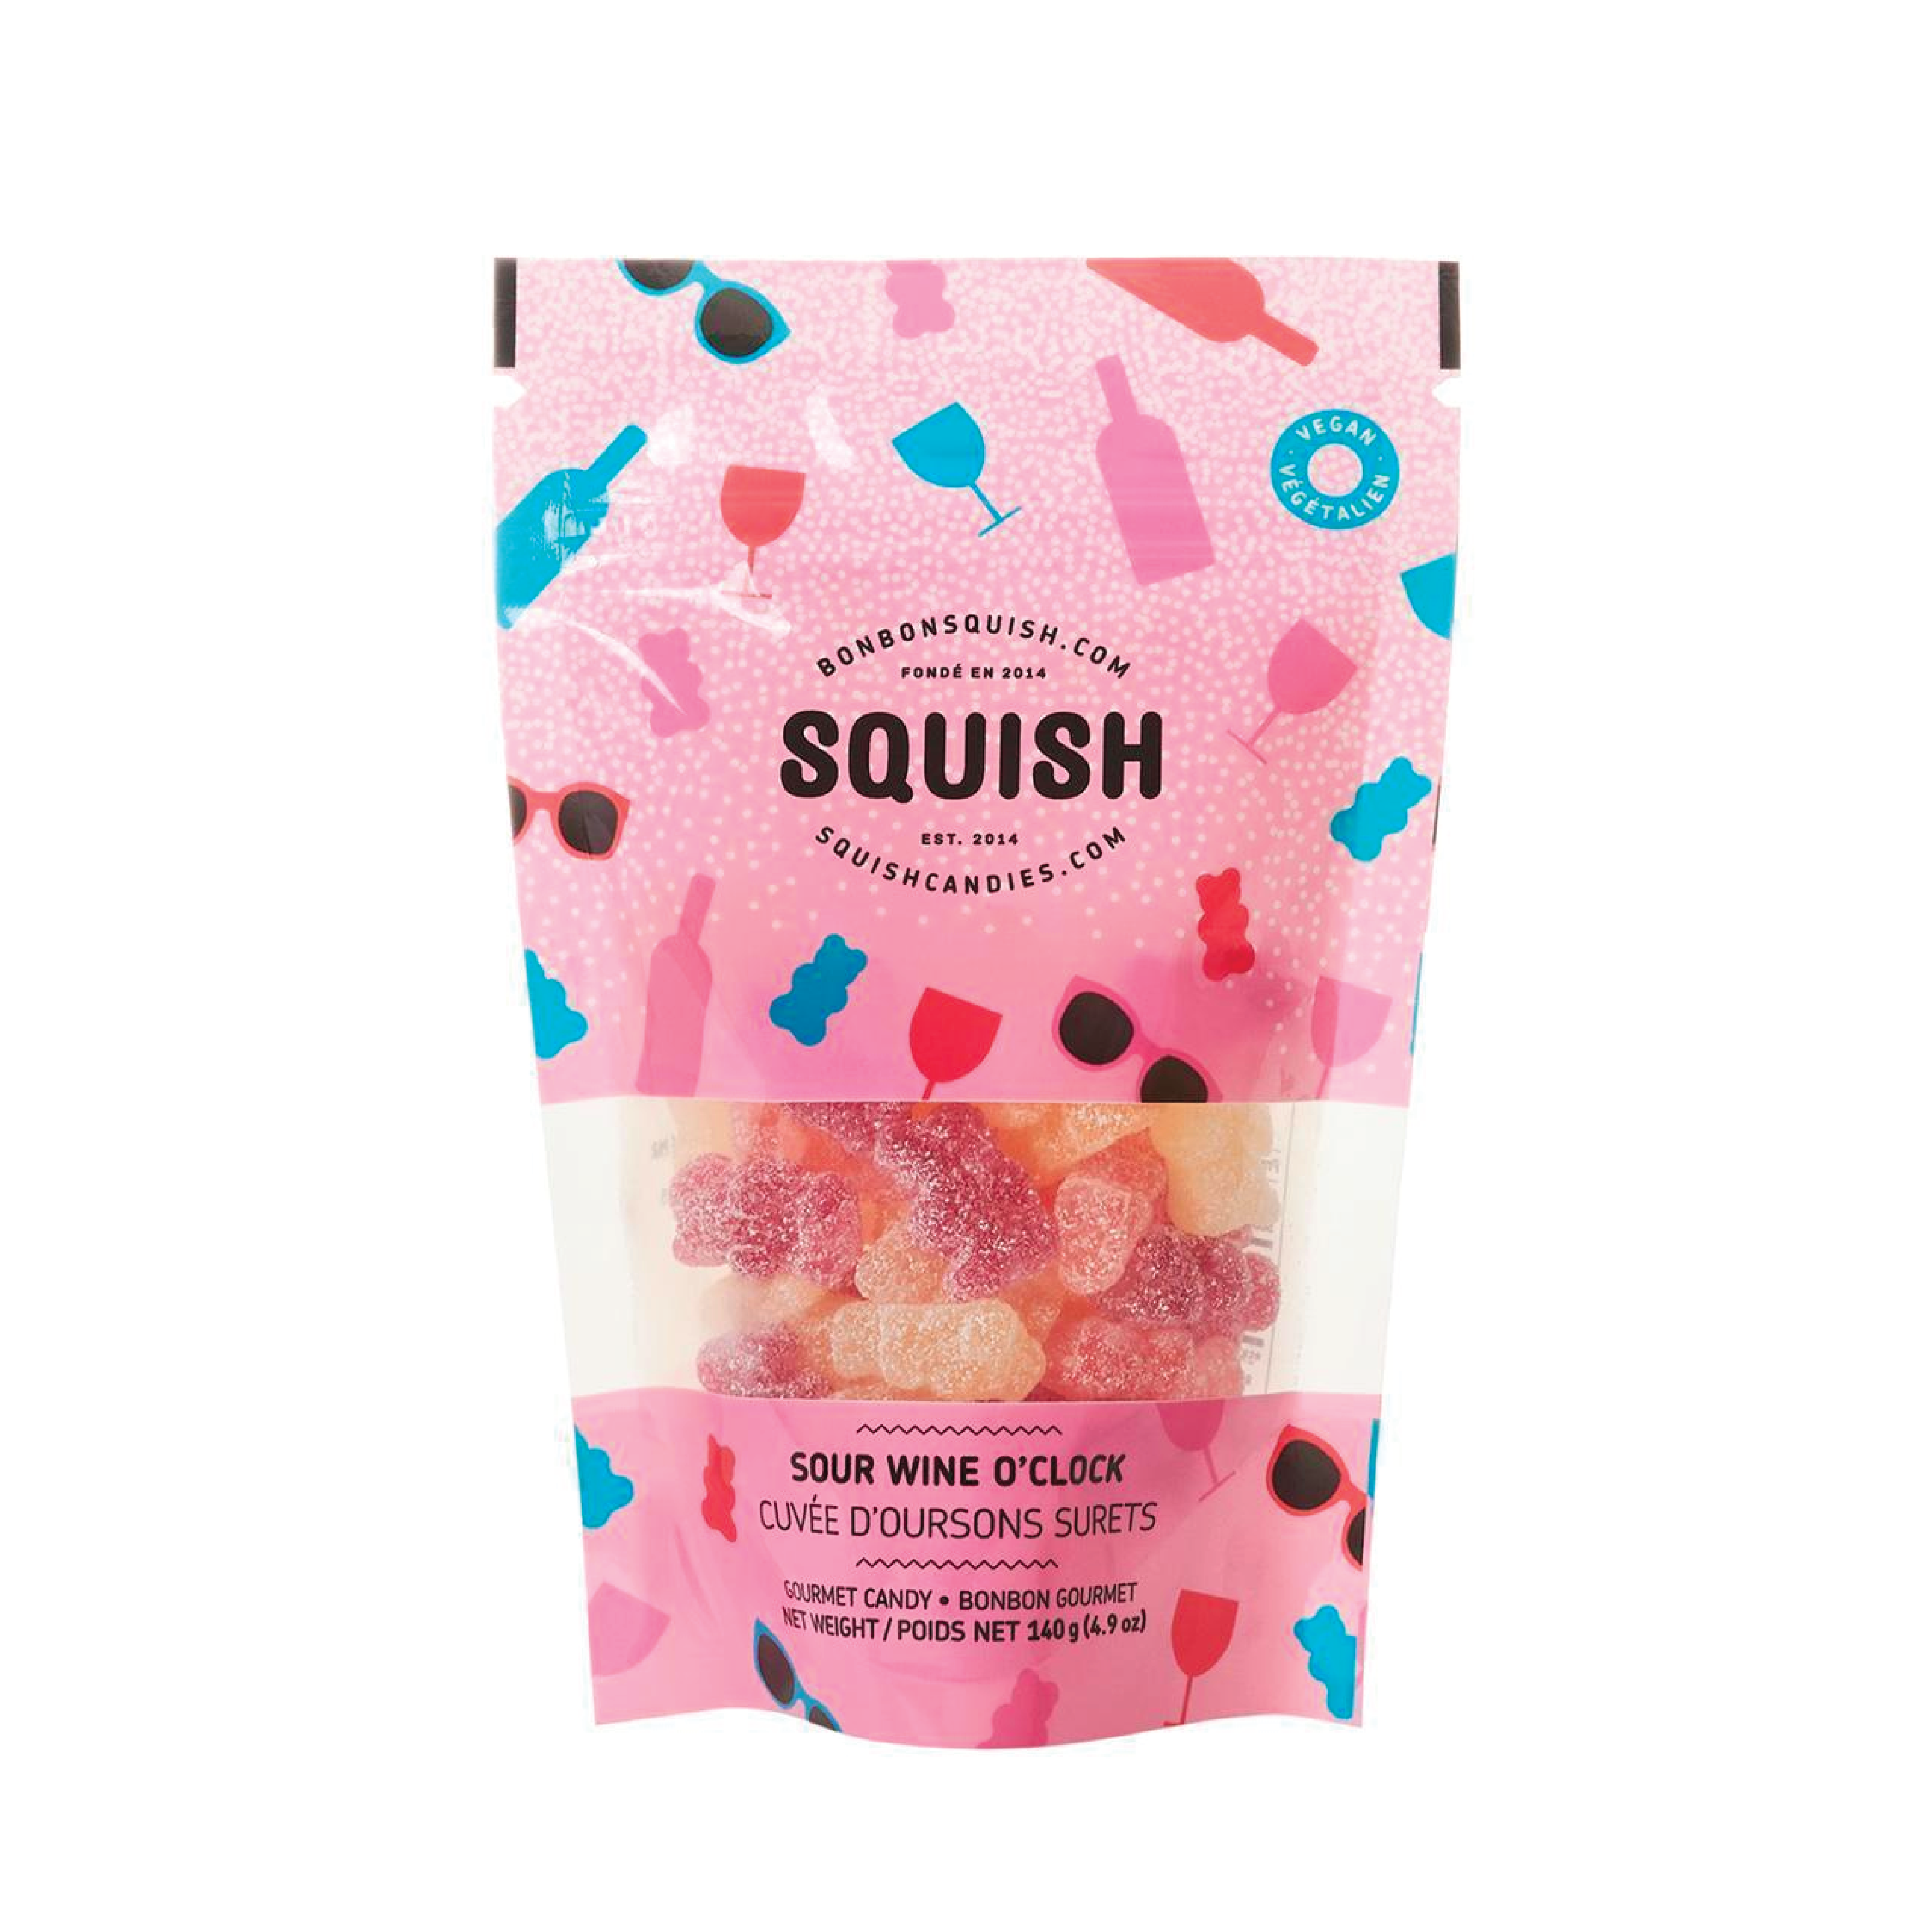 Bonbons vegan Squish - Cuvée d'oursons surets